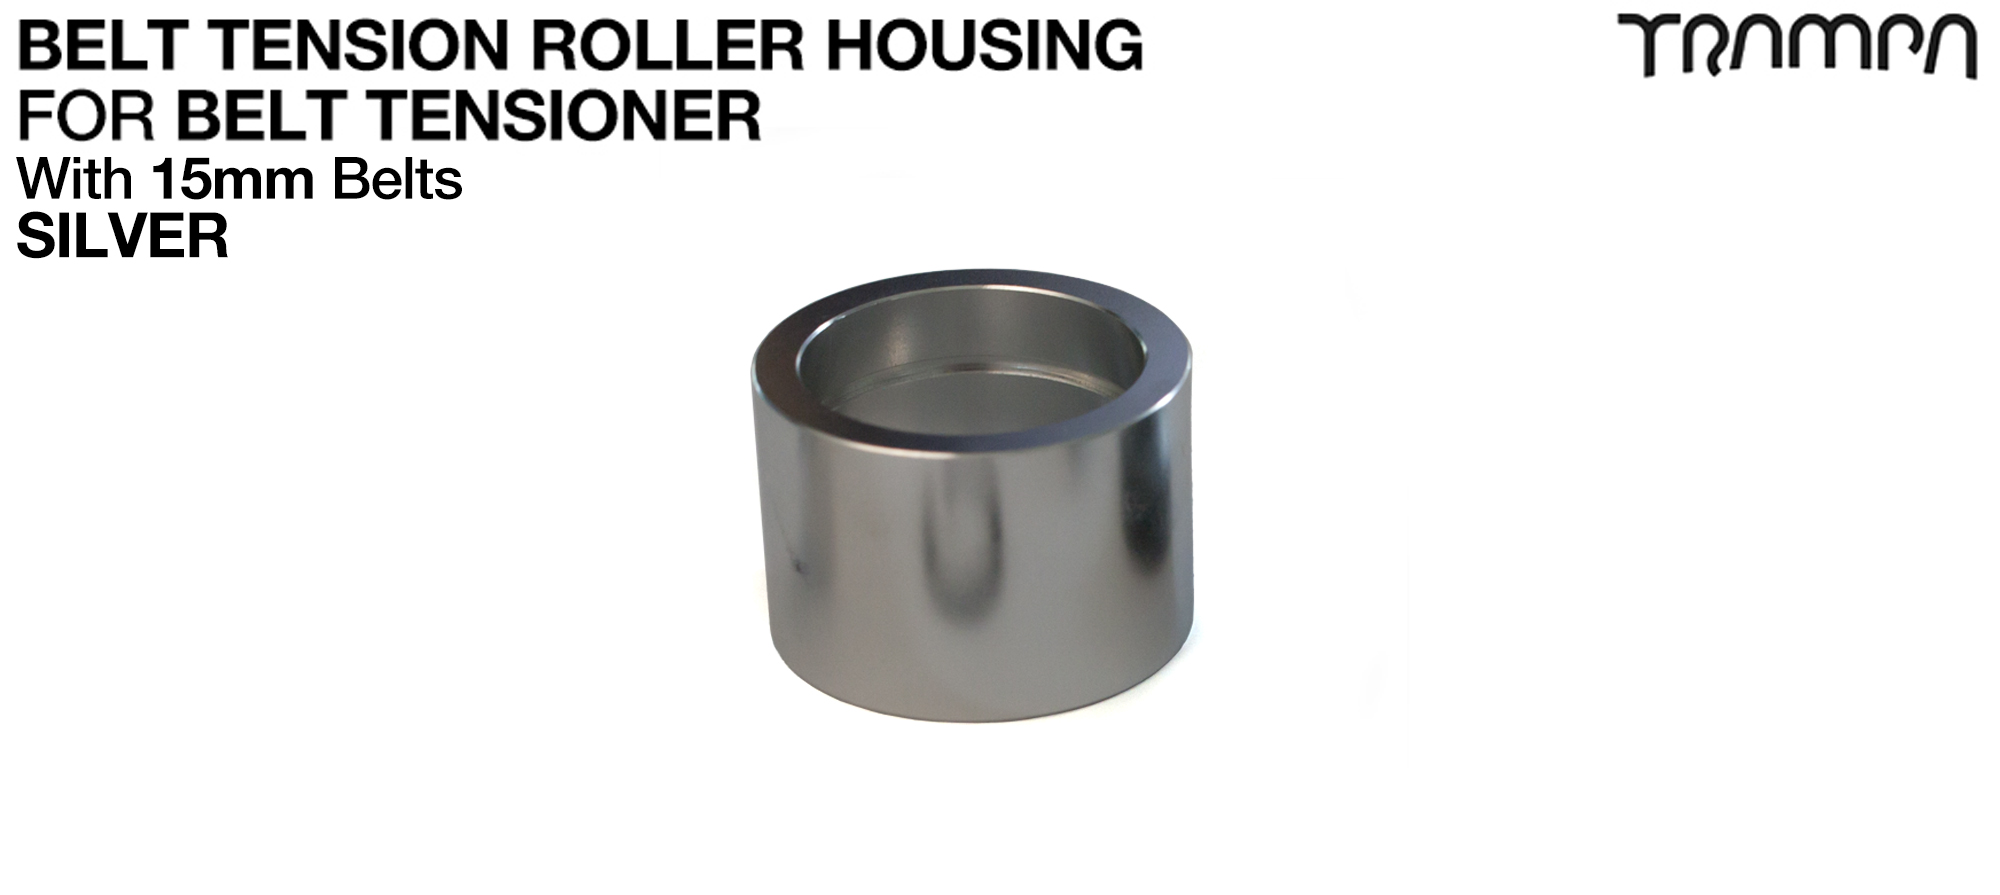 Belt Tension Roller Housing for 15mm Belts - SILVER